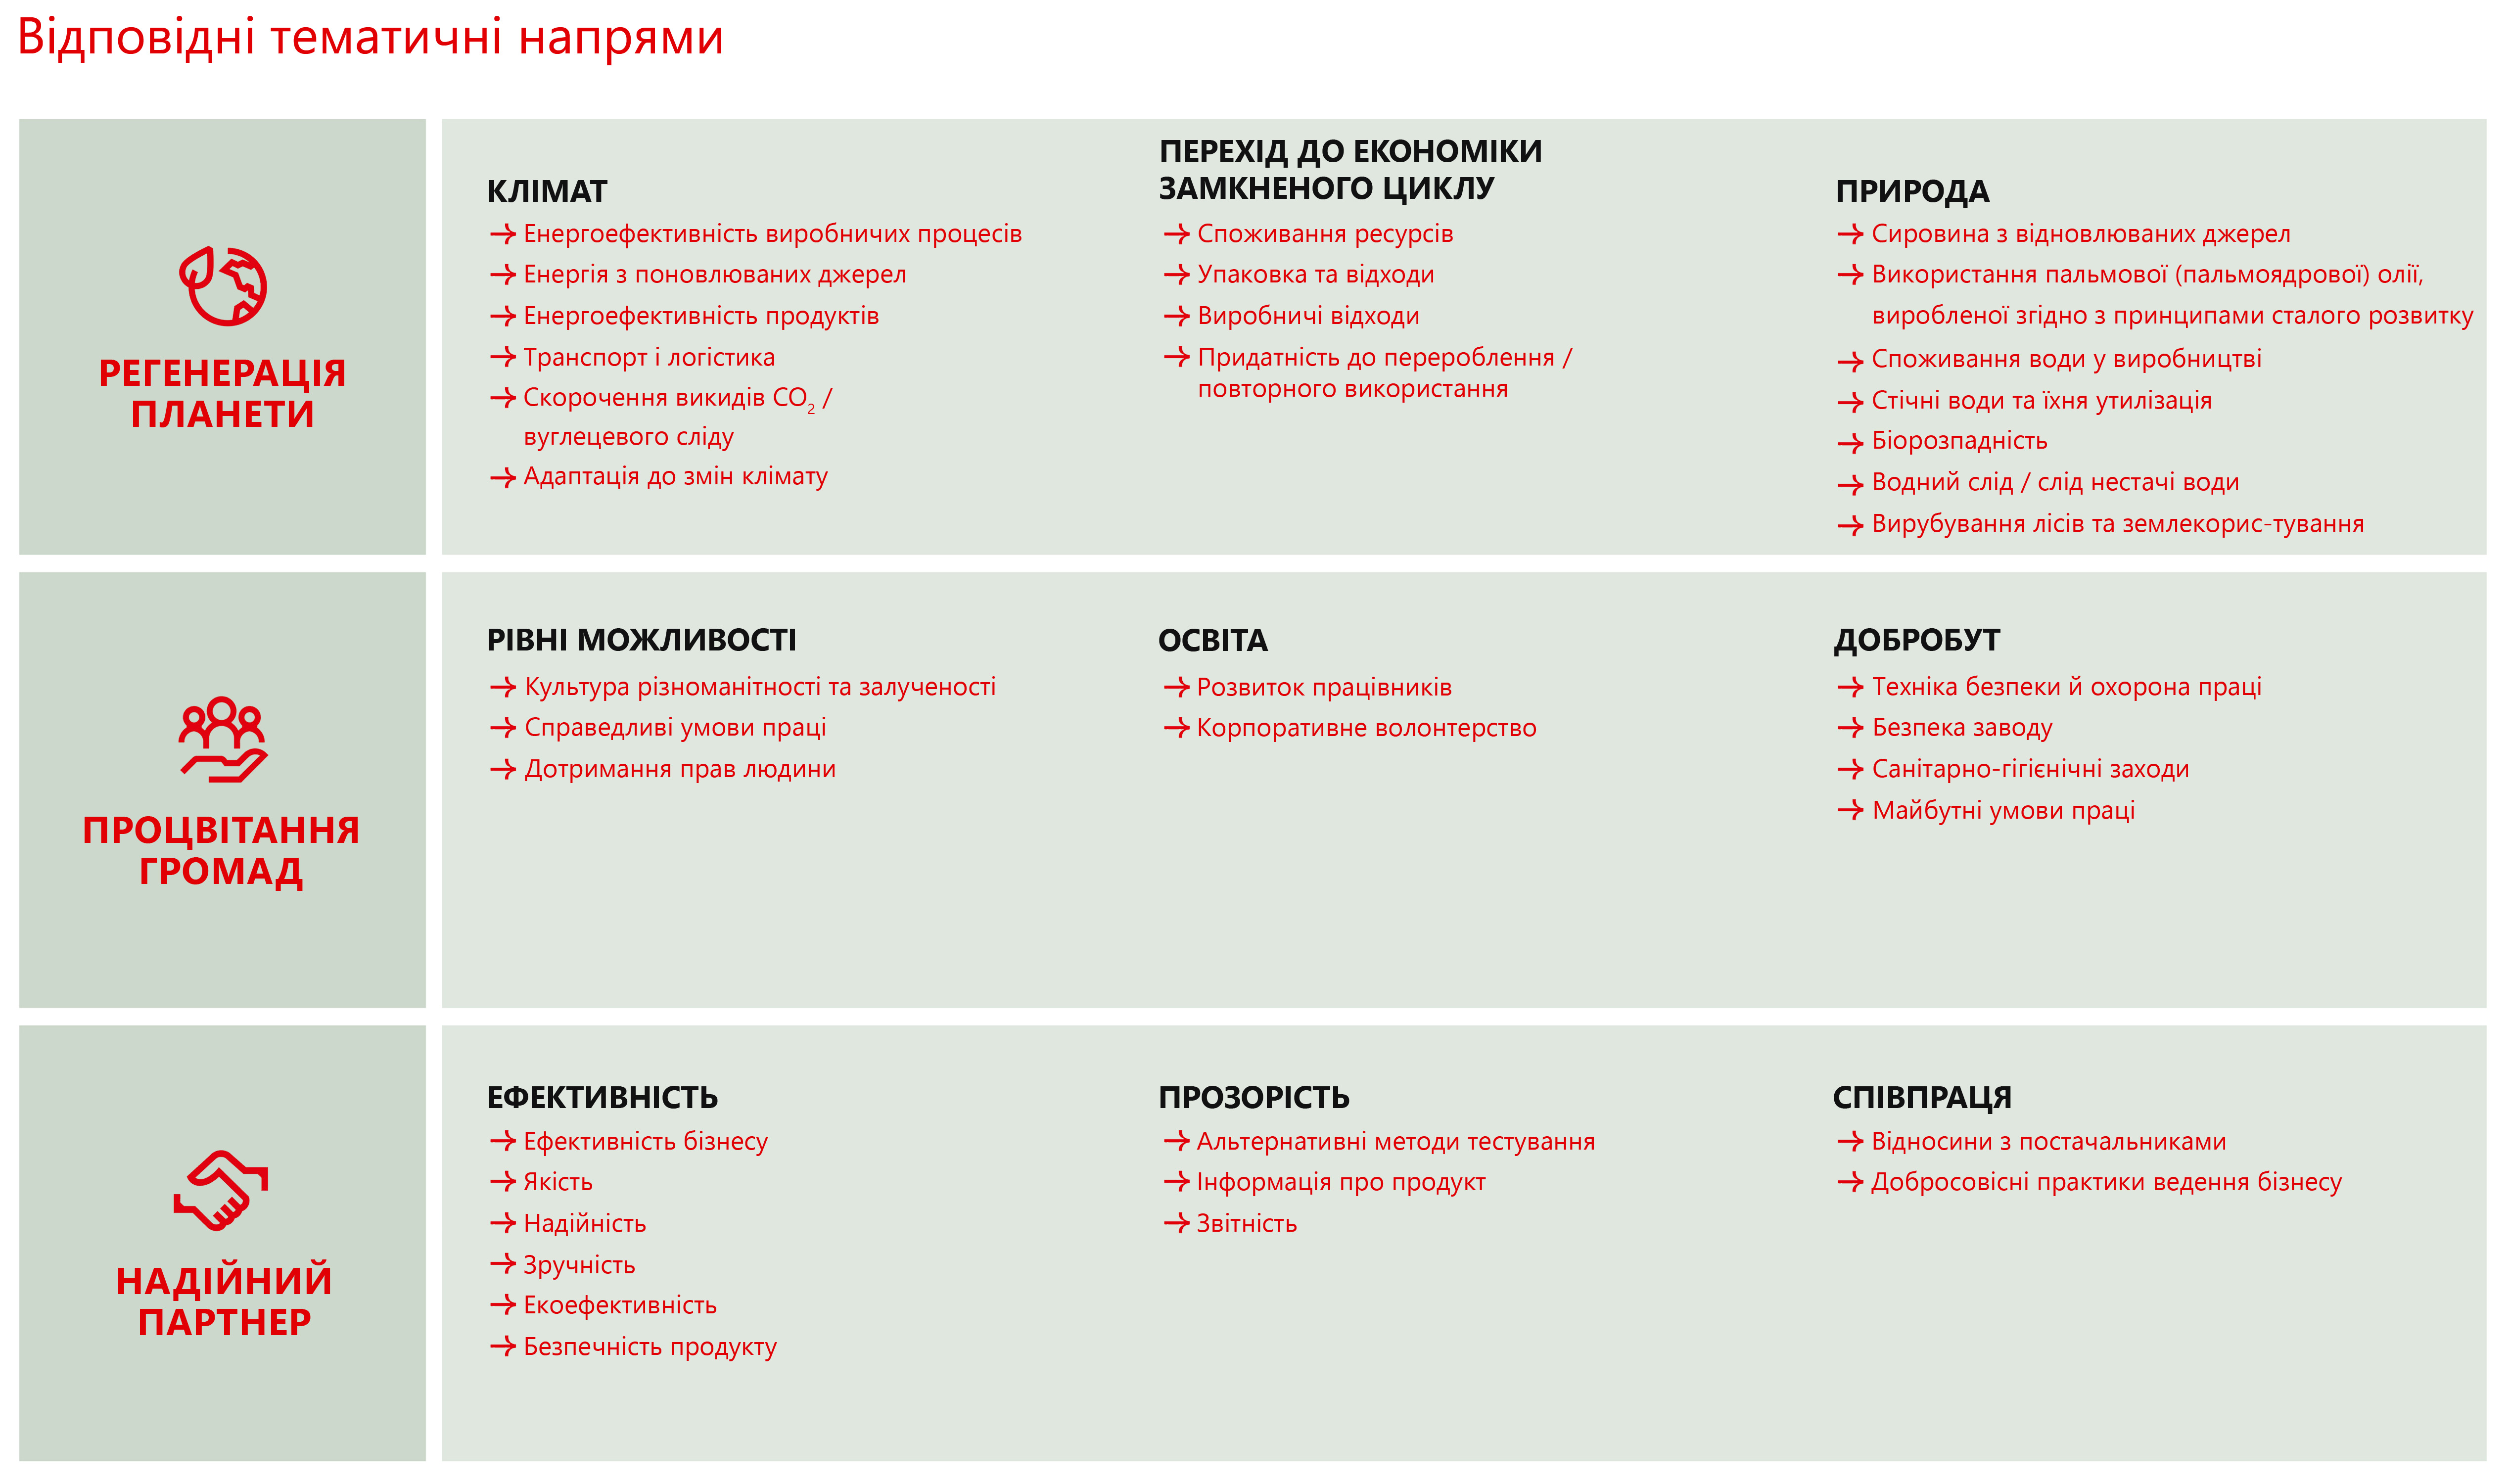 Оглядова таблиця основних тем за напрямами «Природа», «Процвітаючі громади» та «Надійний партнер»